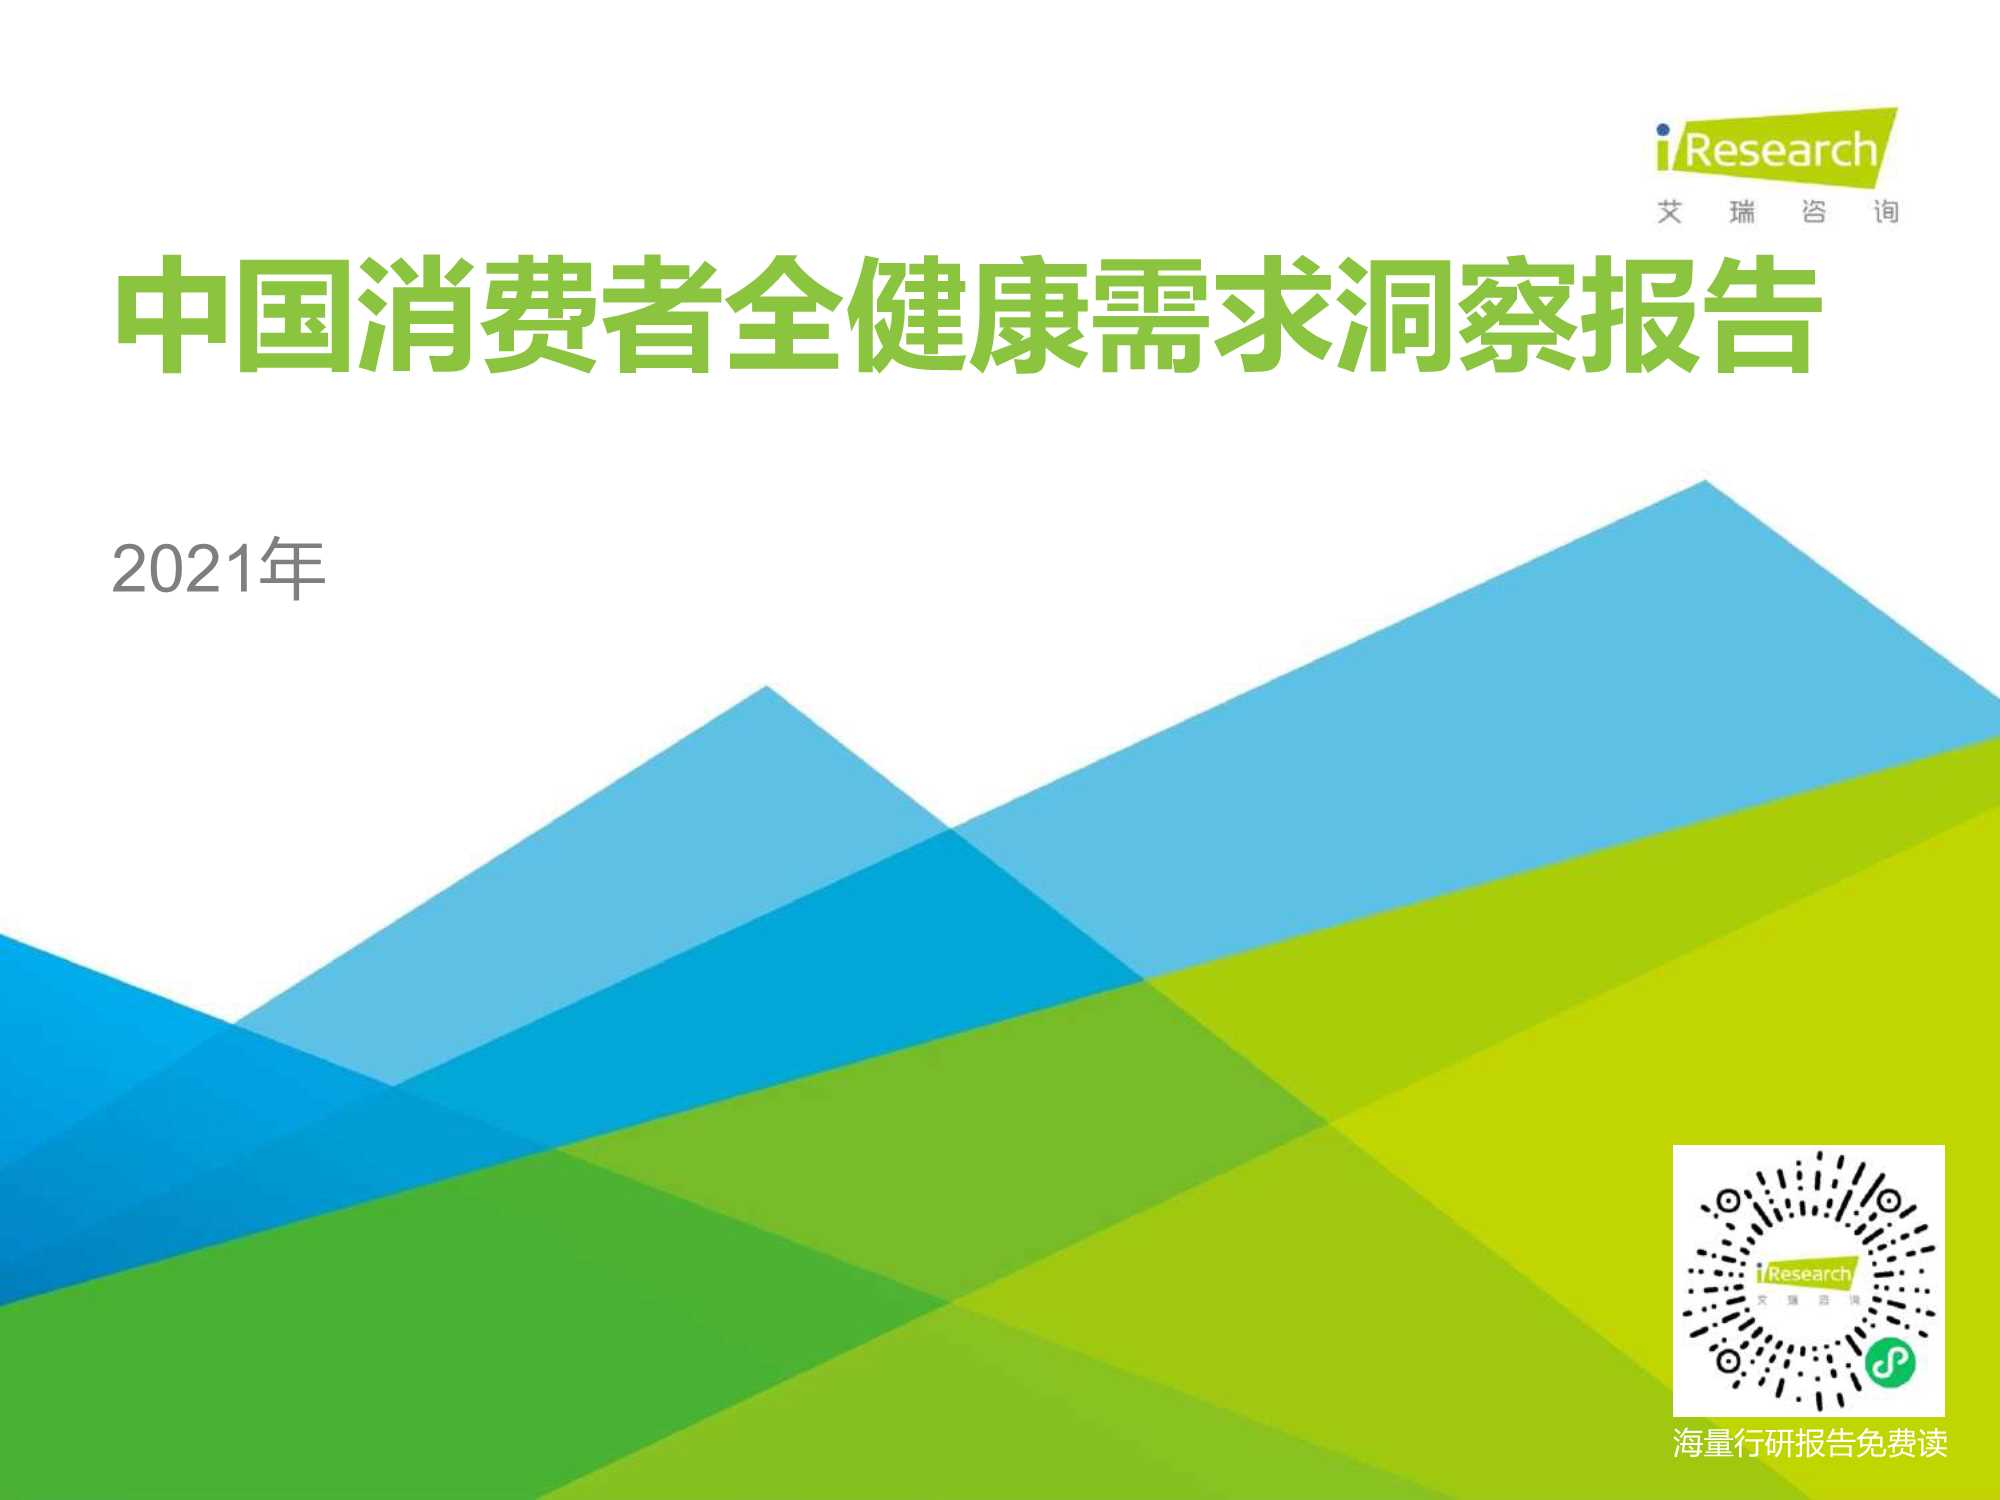 艾瑞咨询-2021年中国消费者全健康需求洞察报告-2021.09-25页